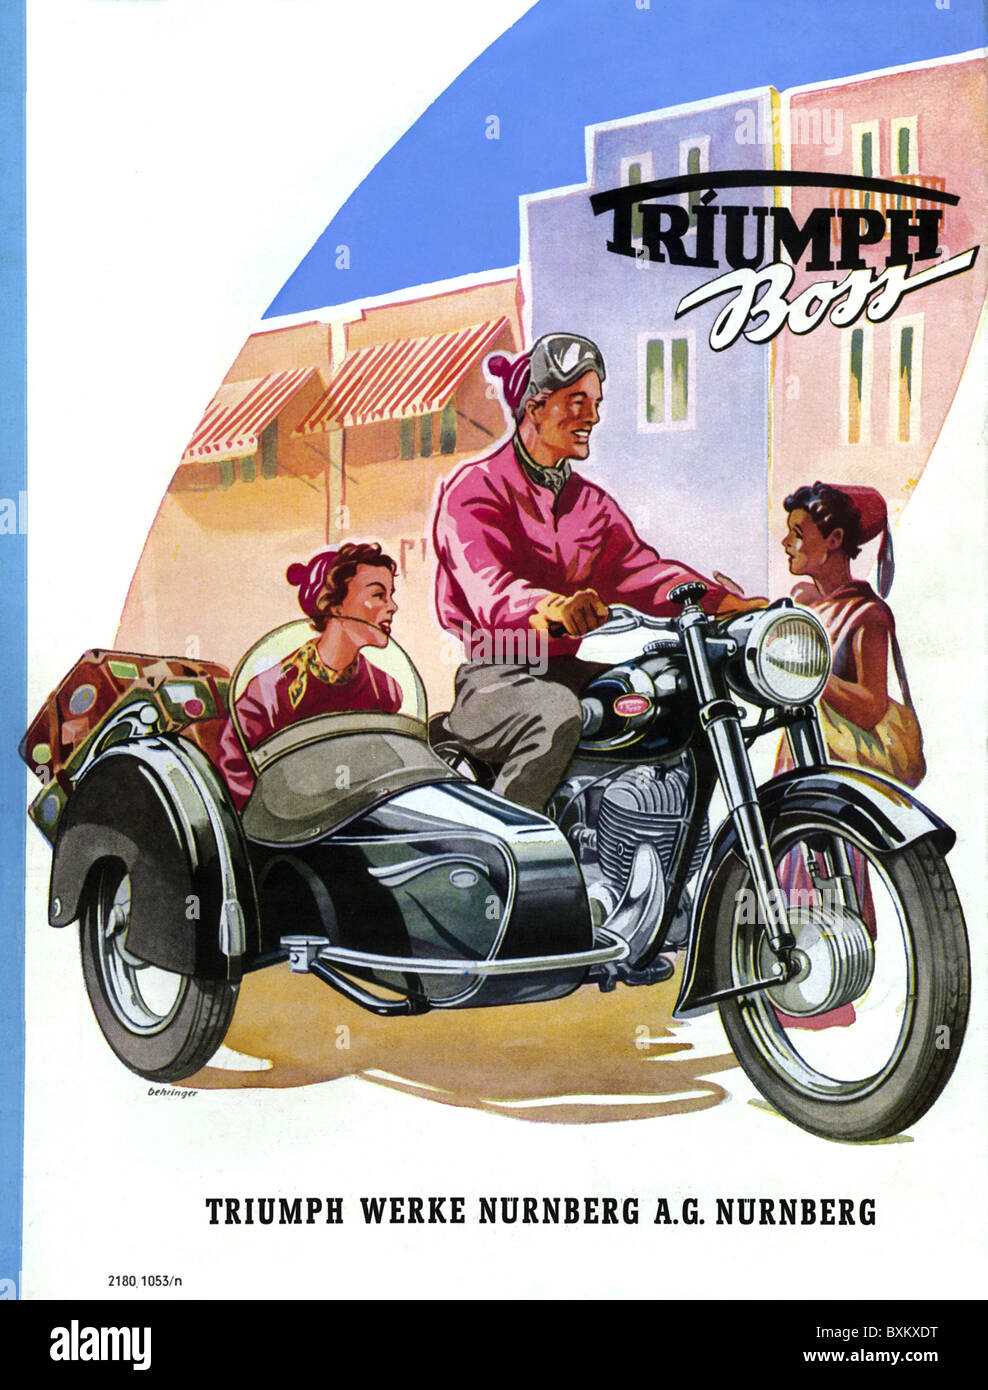 Publicité, moto avec side-car, Triumph, Boss, 350 ccm, Allemagne, 1953,  droits additionnels-Clearences-non disponible Photo Stock - Alamy